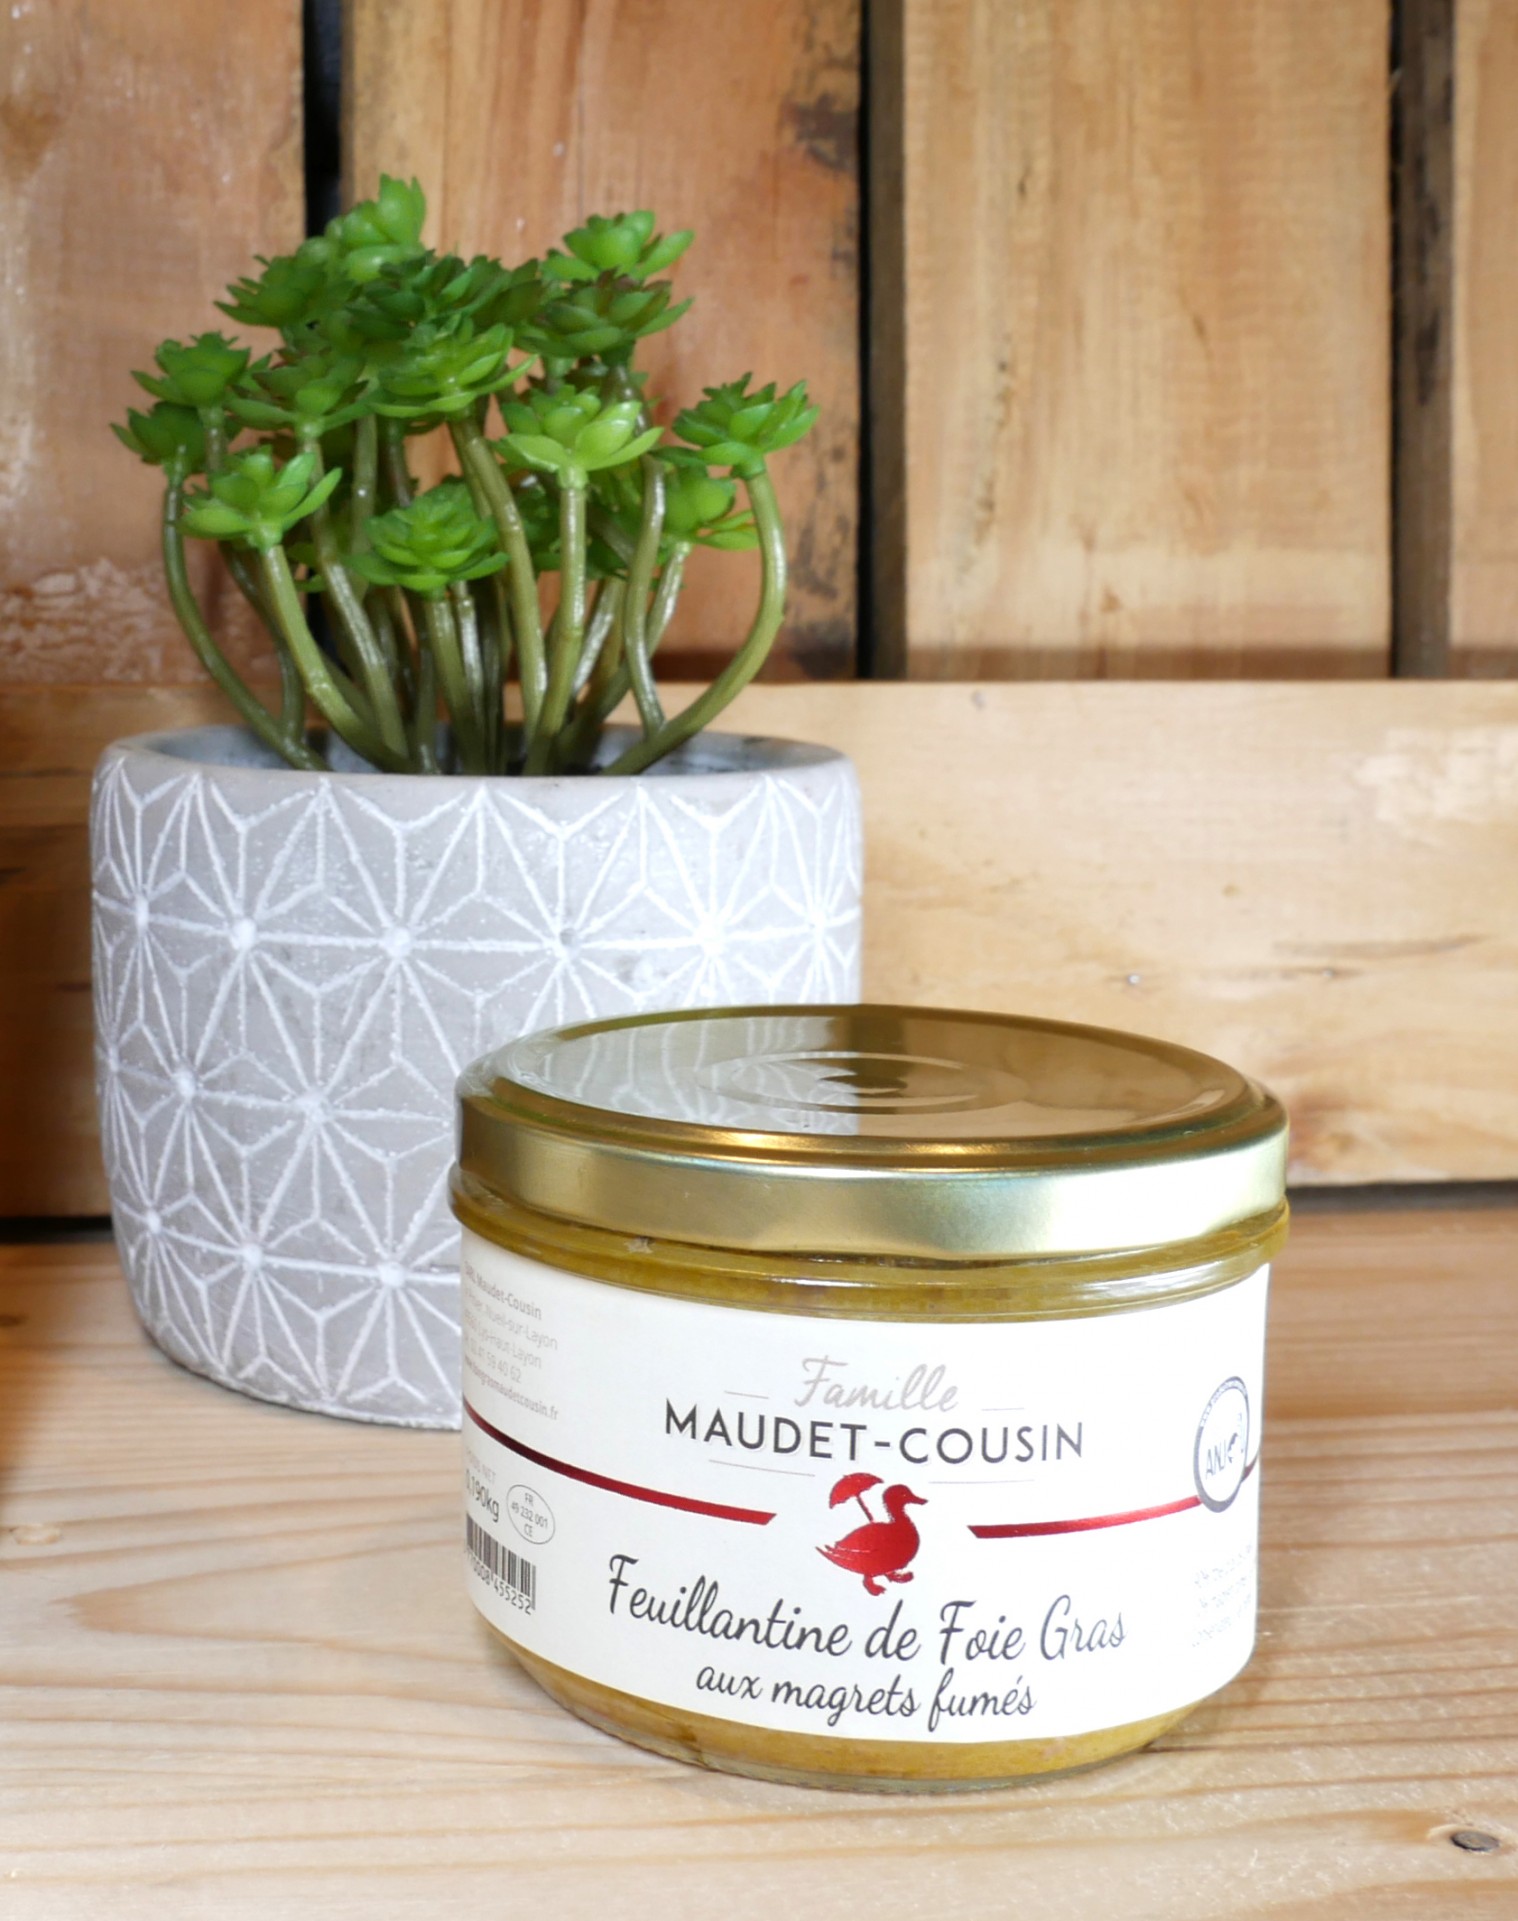 Feuillantine de Foie gras Maudet Cousin